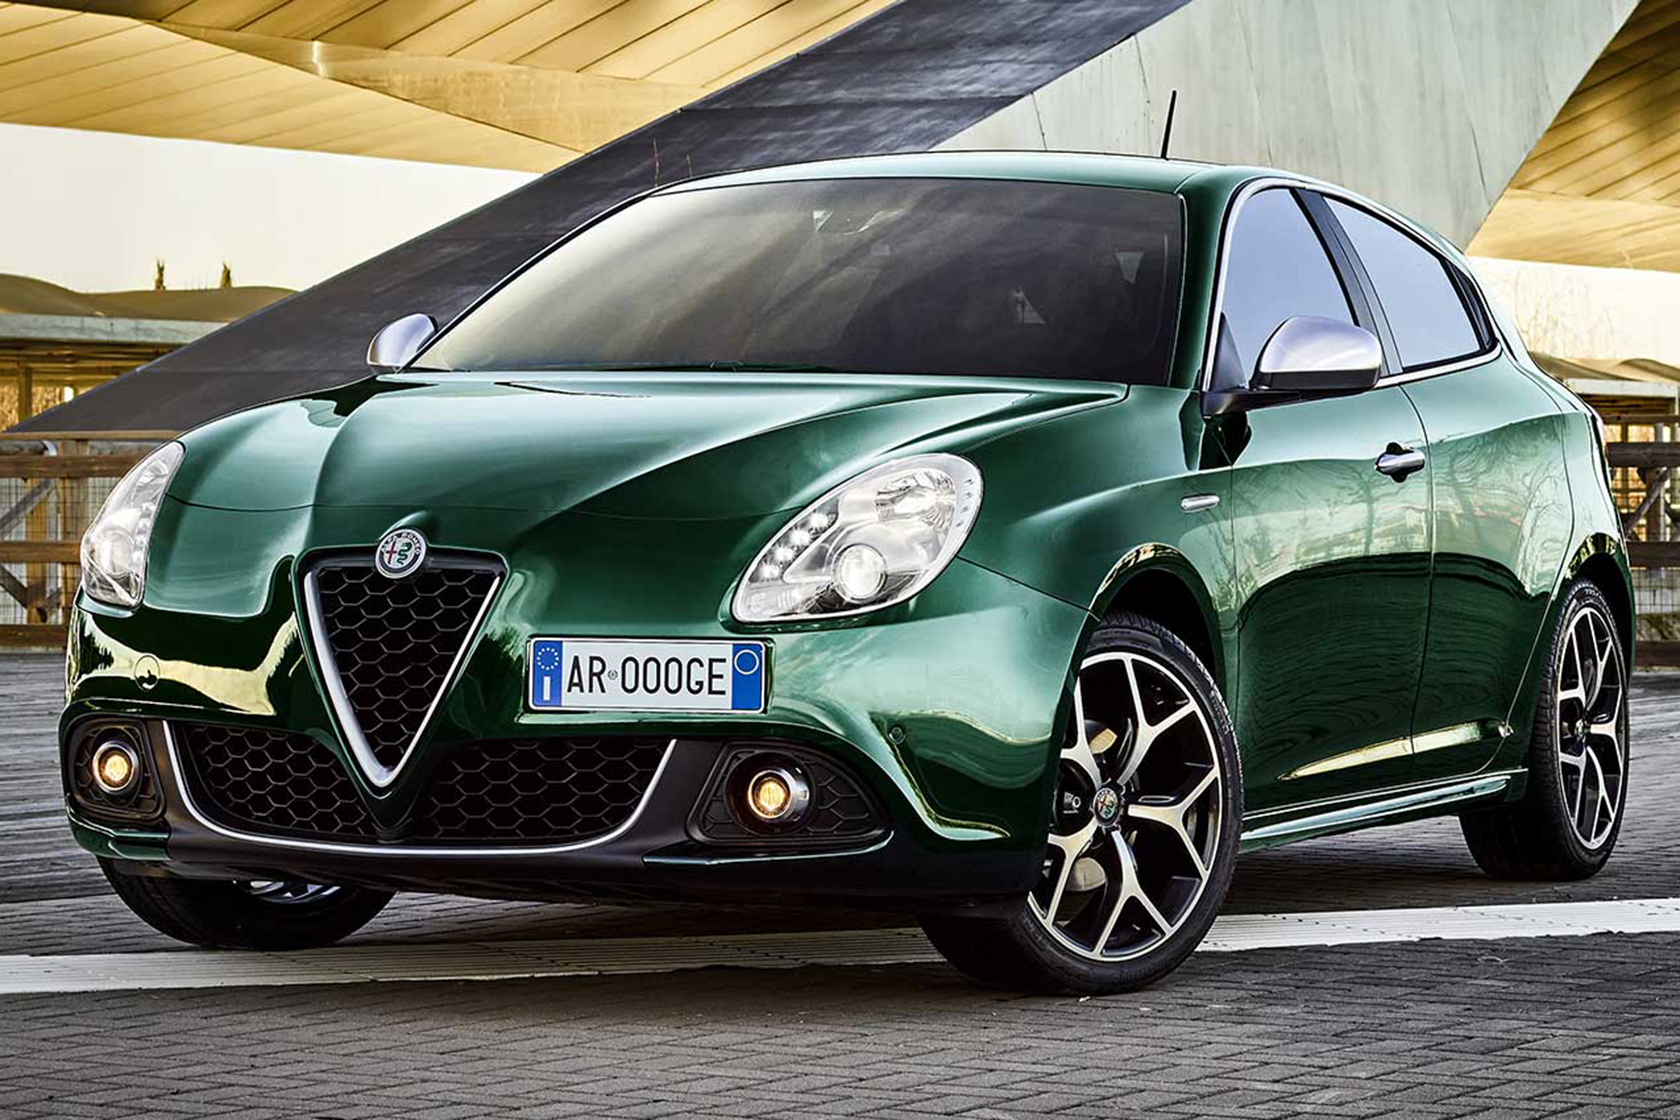 New Alfa Romeo Giulietta Deals in Ireland Carzone